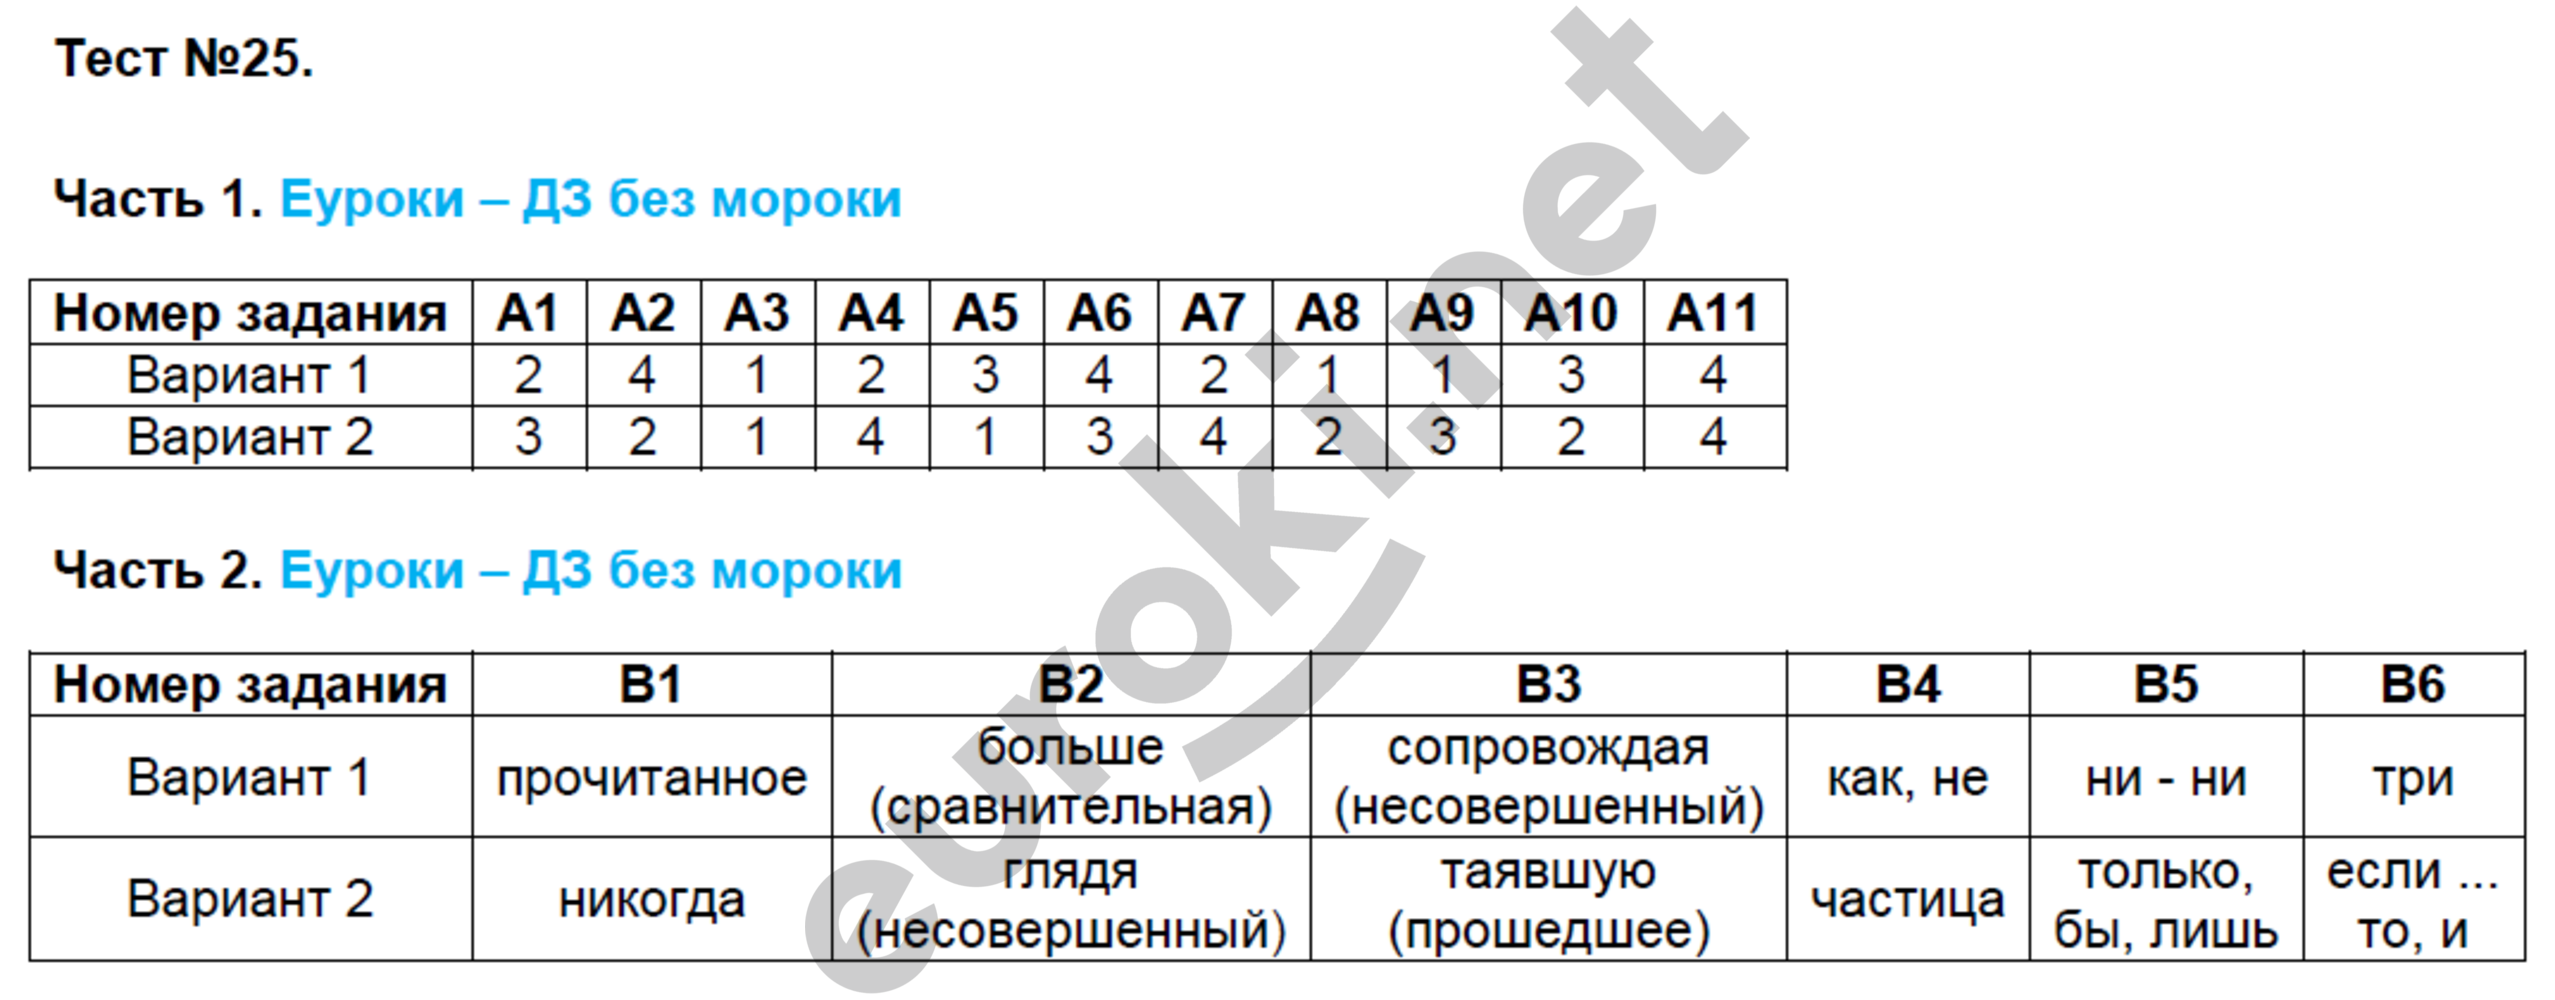 Тесты по материалу 9 класса. Тесты Егорова 7 класс по русскому языку. Русский язык 7 класс тематические тесты Егорова.